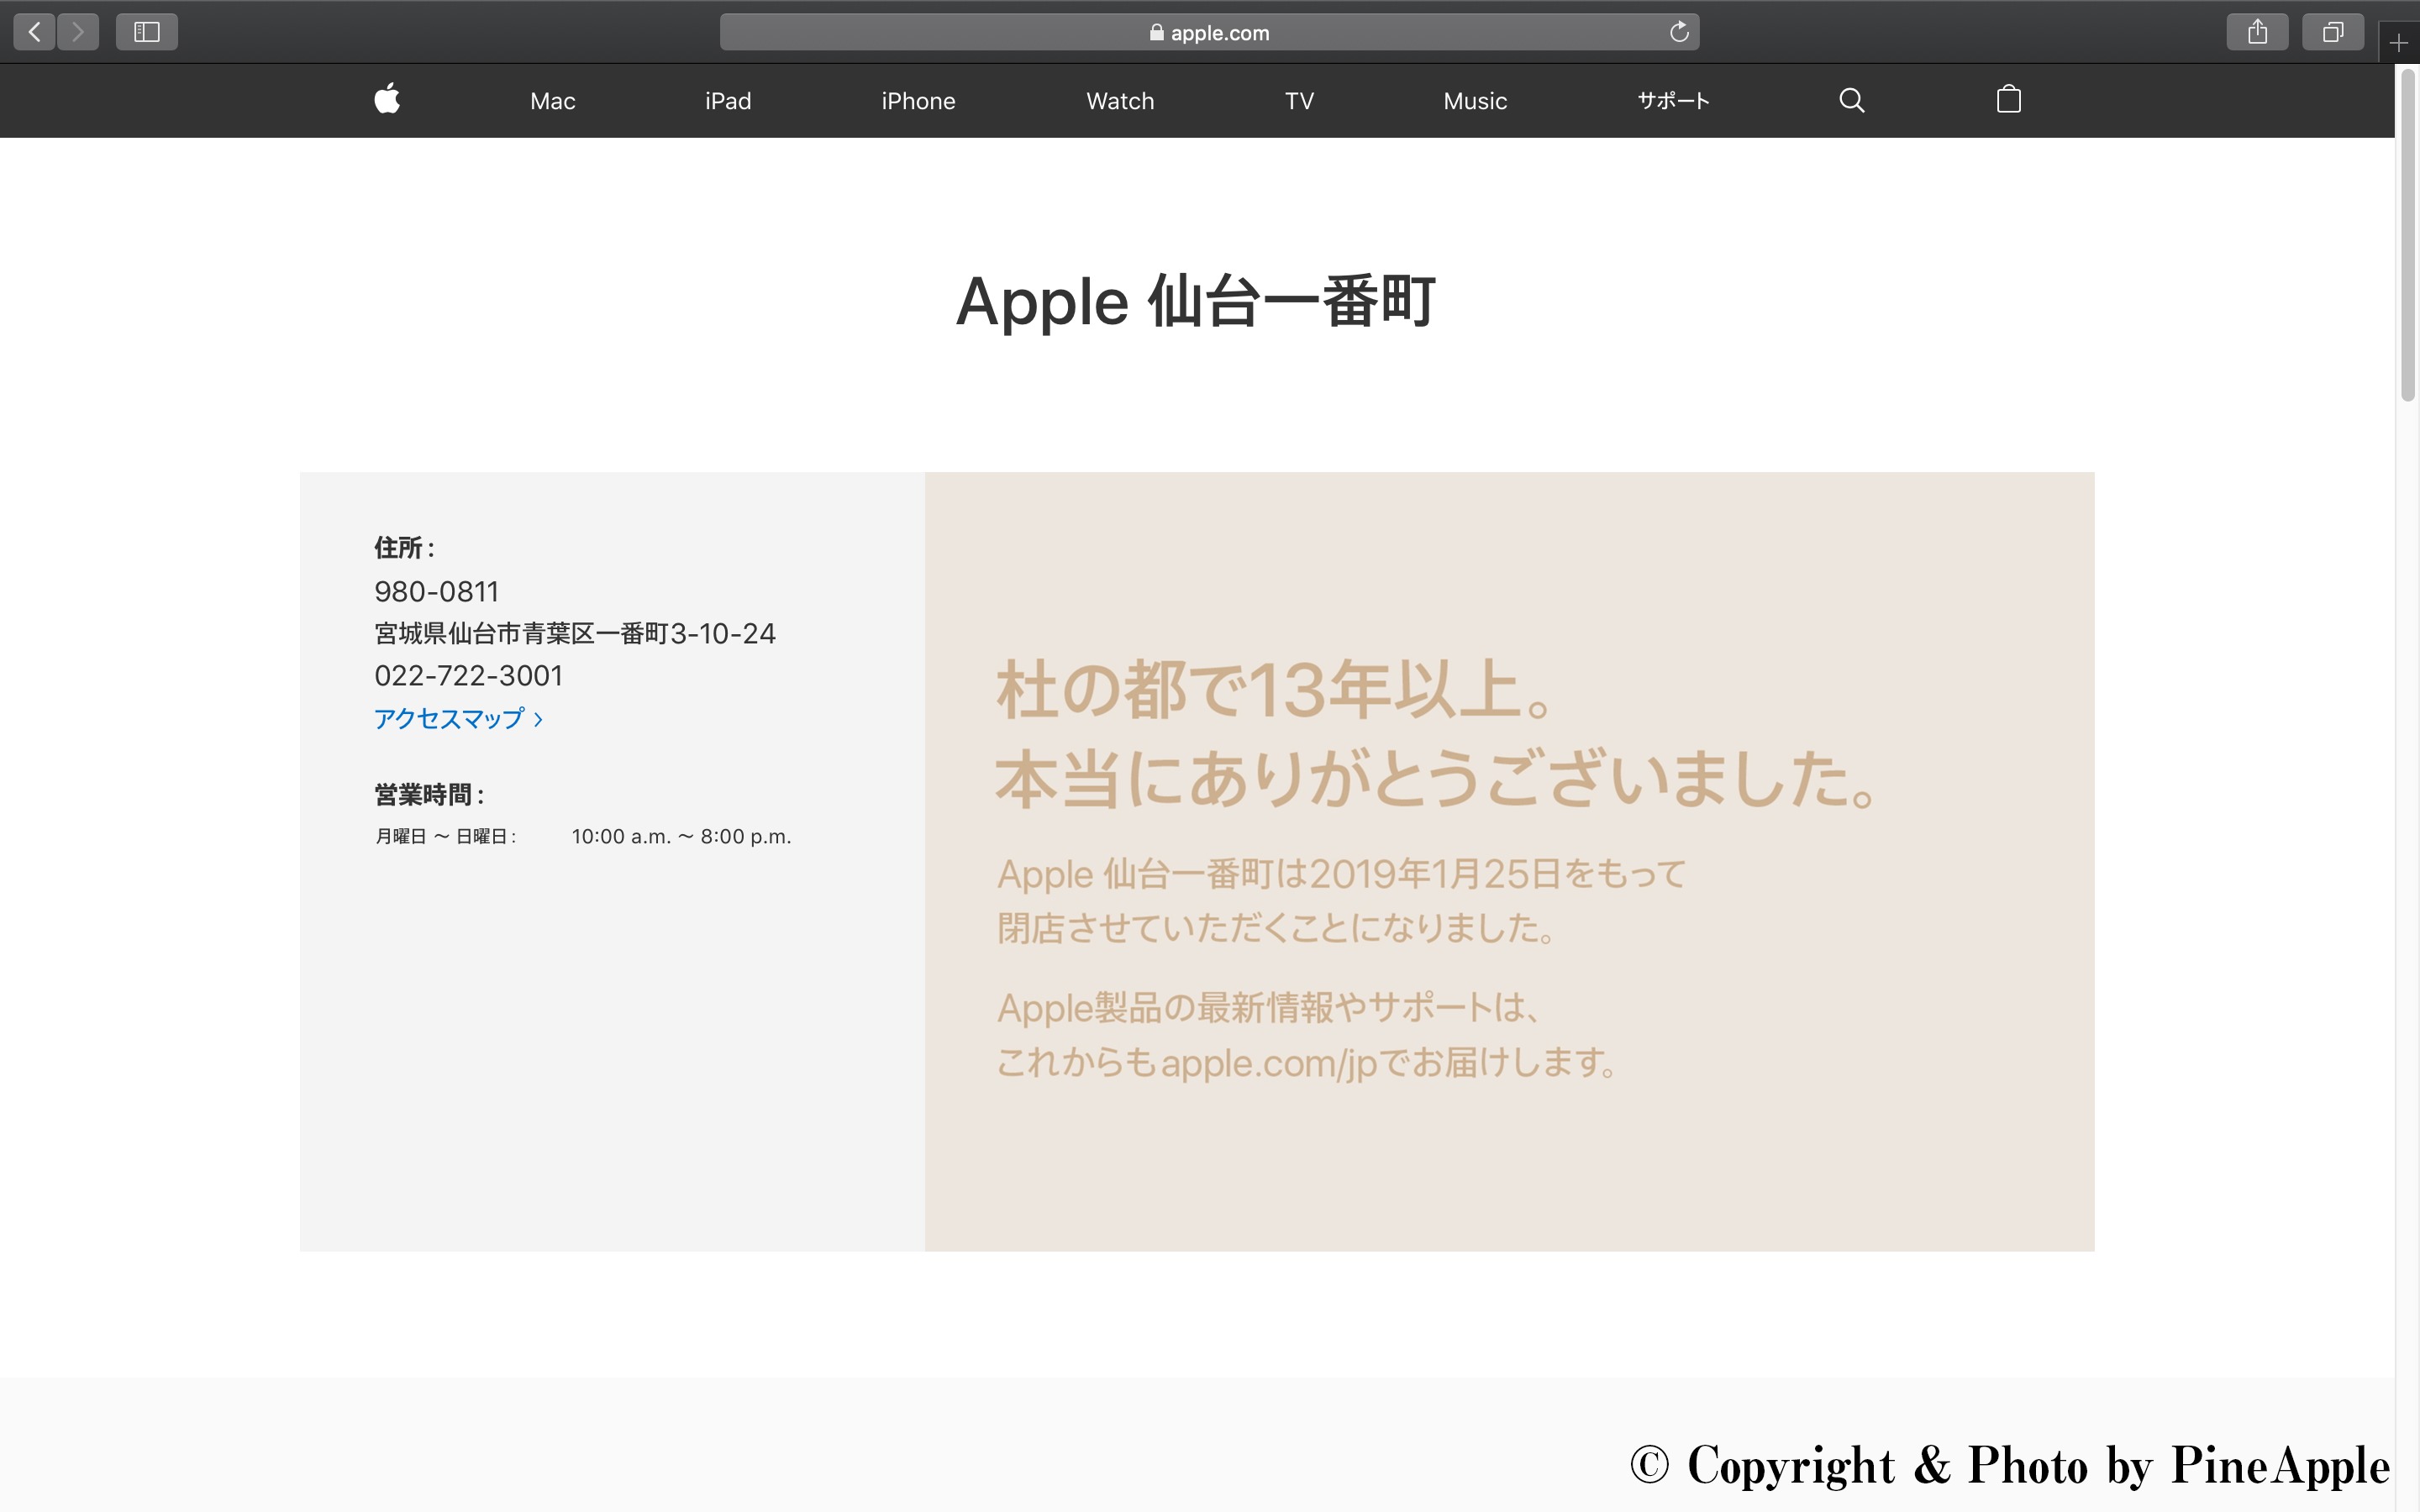 仙台一番町 - Apple Store - Apple（日本）